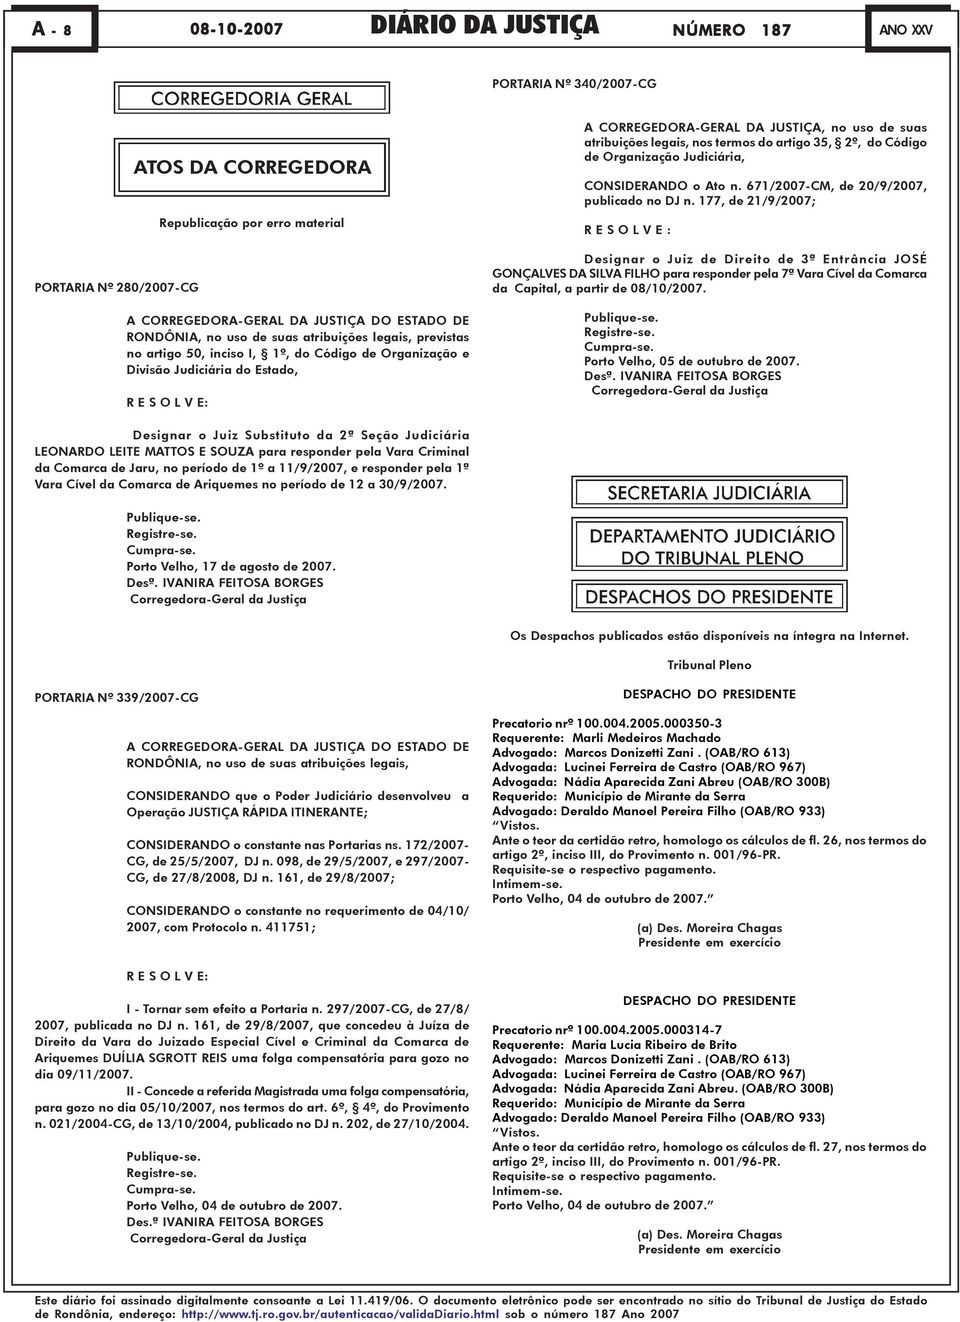 Código de Organização e Divisão Judiciária do Estado, R E S O L V E: CONSIDERANDO o Ato n. 671/2007-CM, de 20/9/2007, publicado no DJ n.